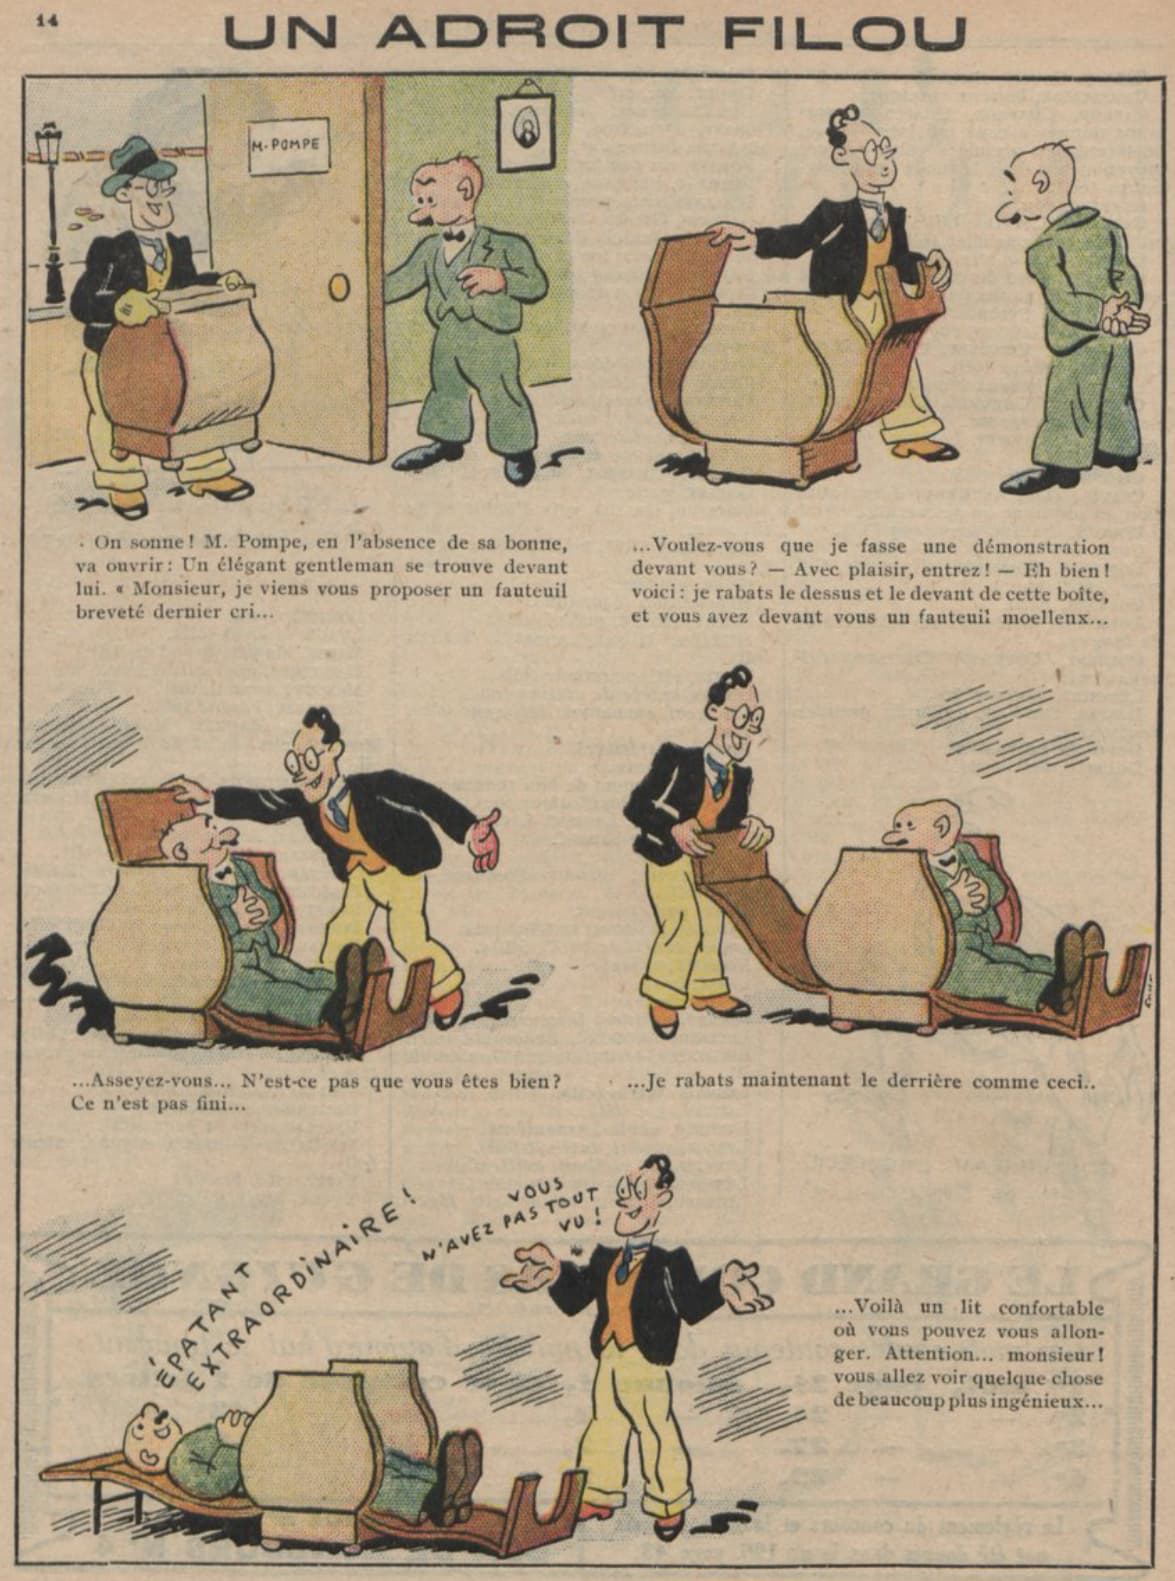 Guignol 1932 - n°199 - page 14 - Un adroit filou - 24 juillet 1932